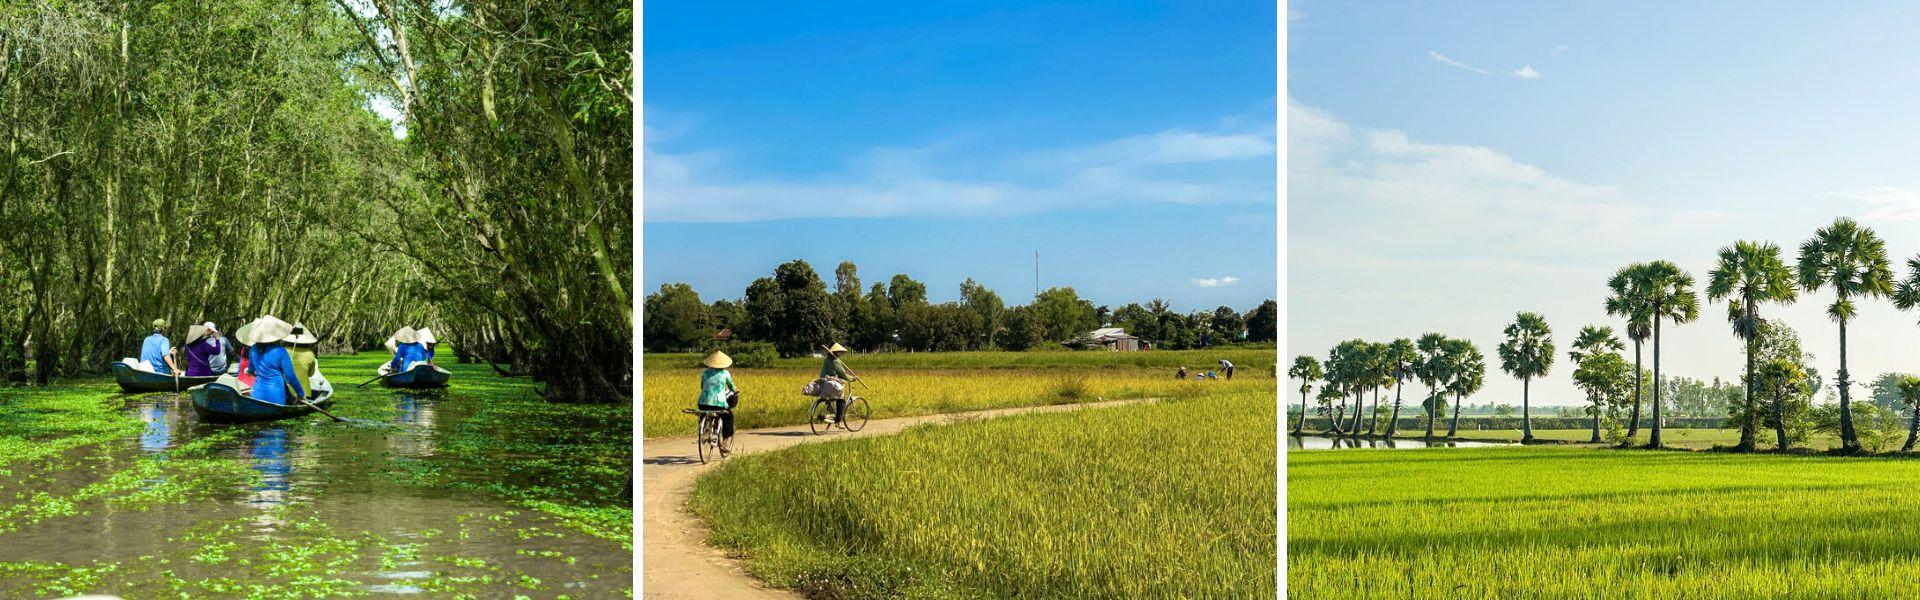 Chau Doc: La guida completa